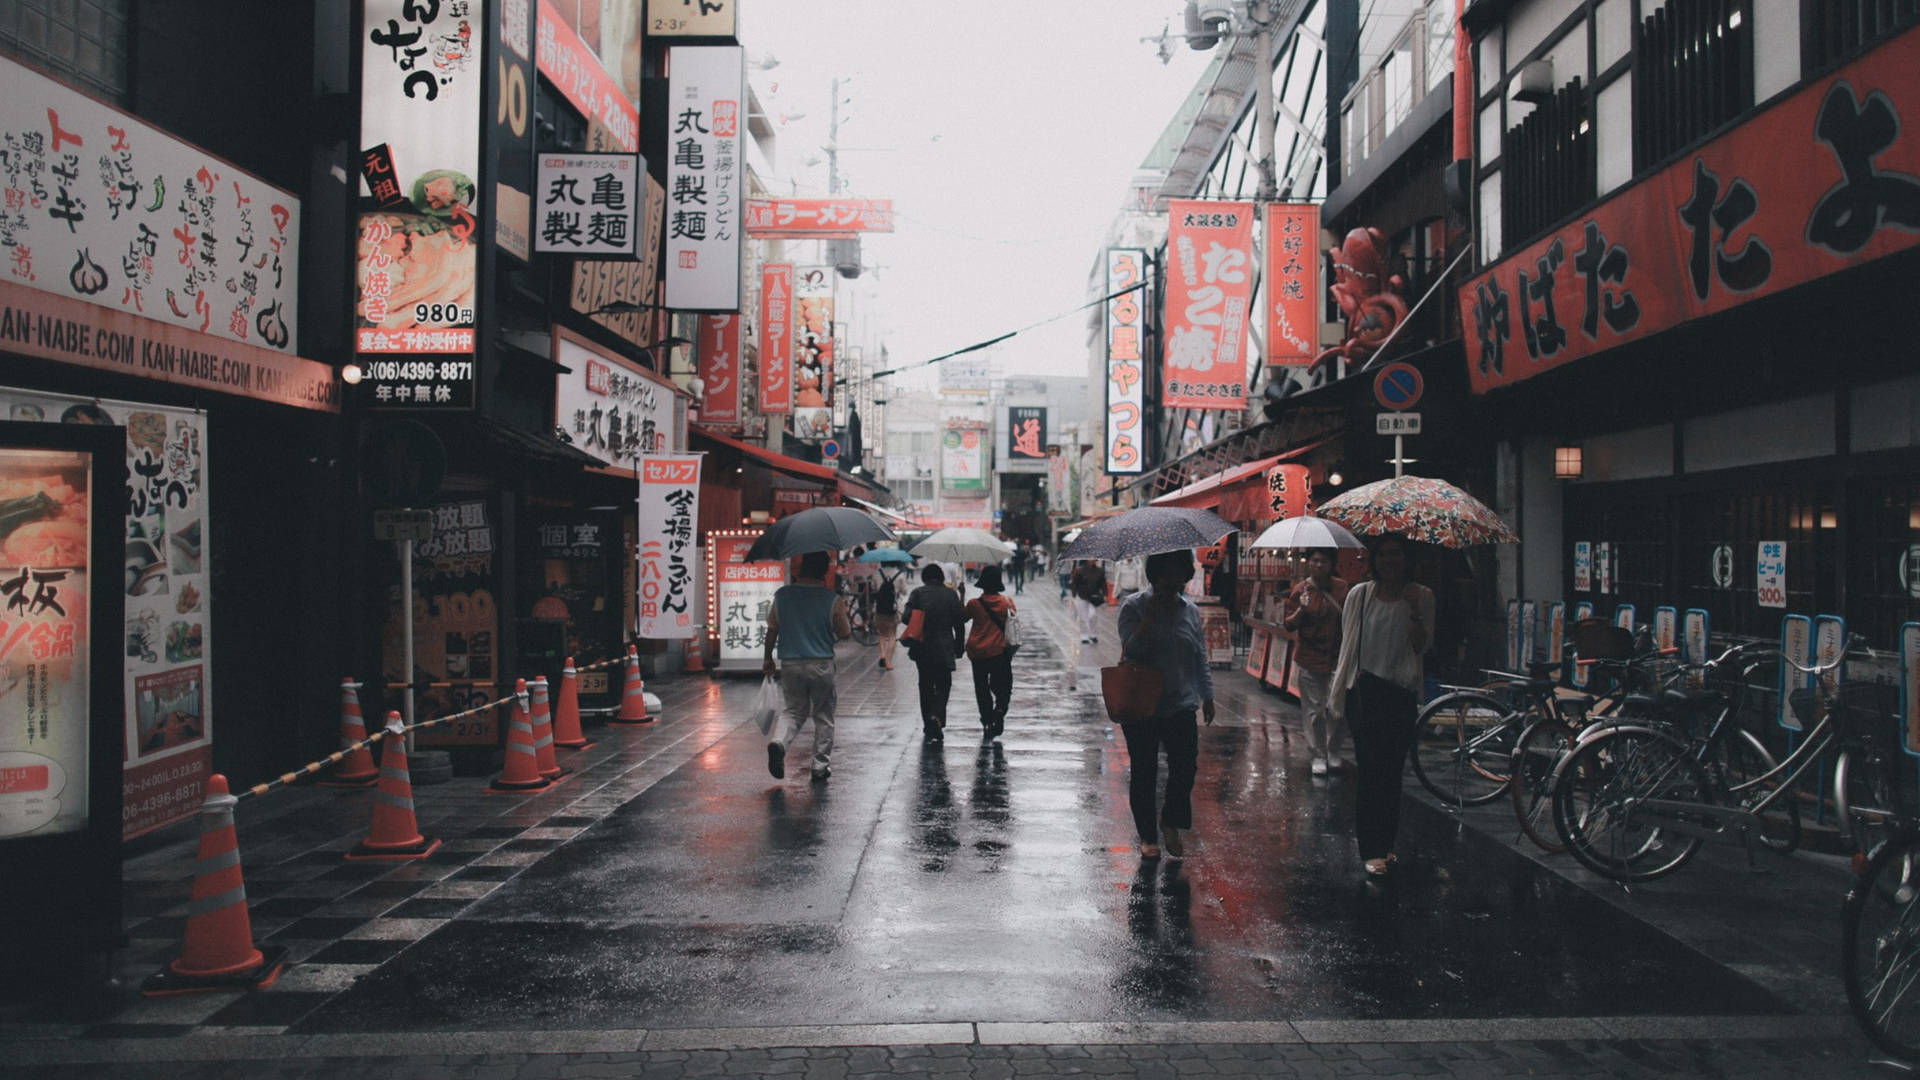 Rainy City Street In Japan